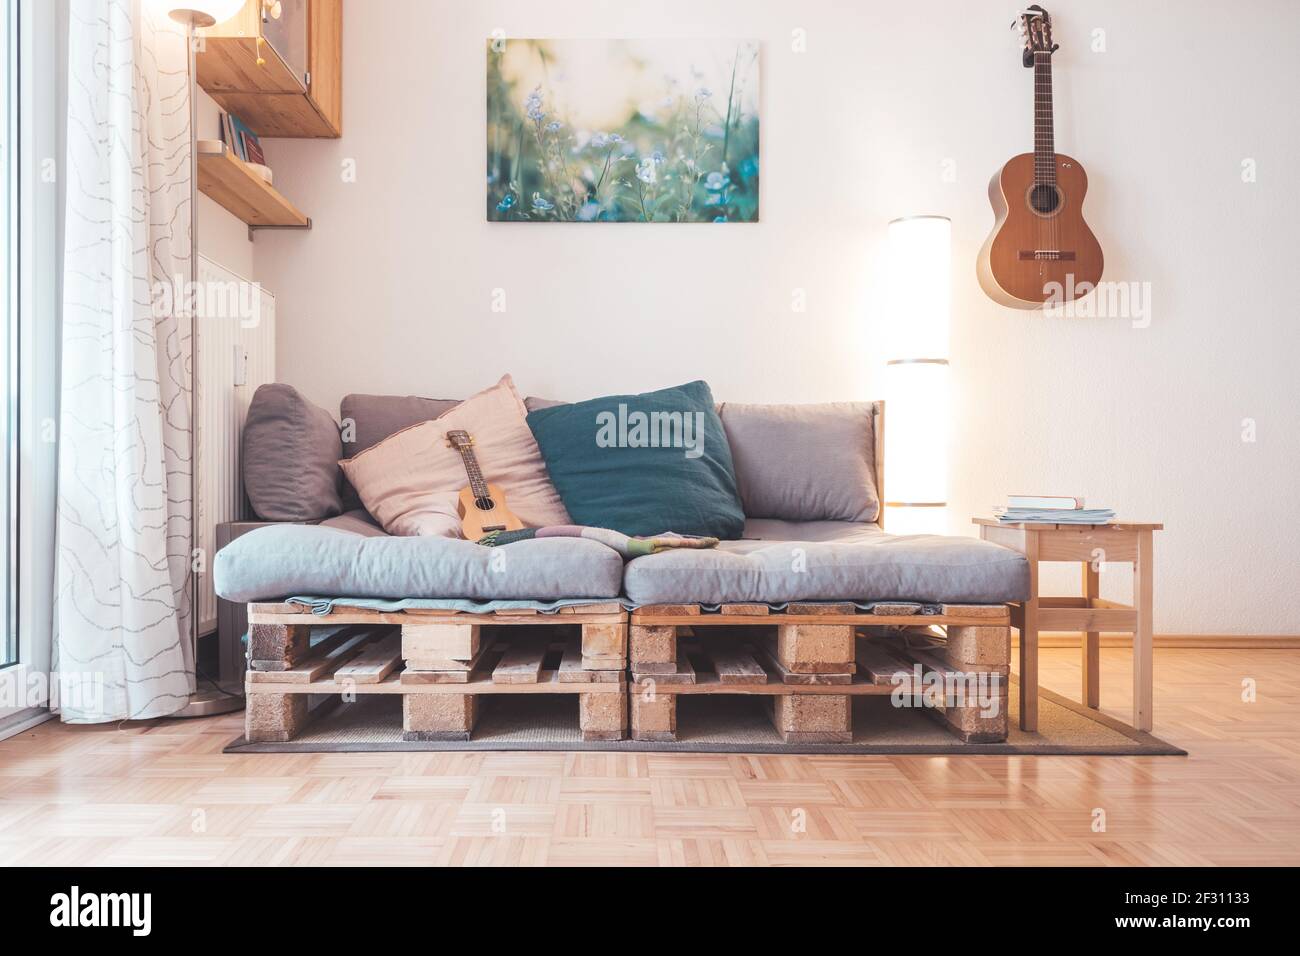 Gros plan de mobilier artisanal, canapé de palette Photo Stock - Alamy